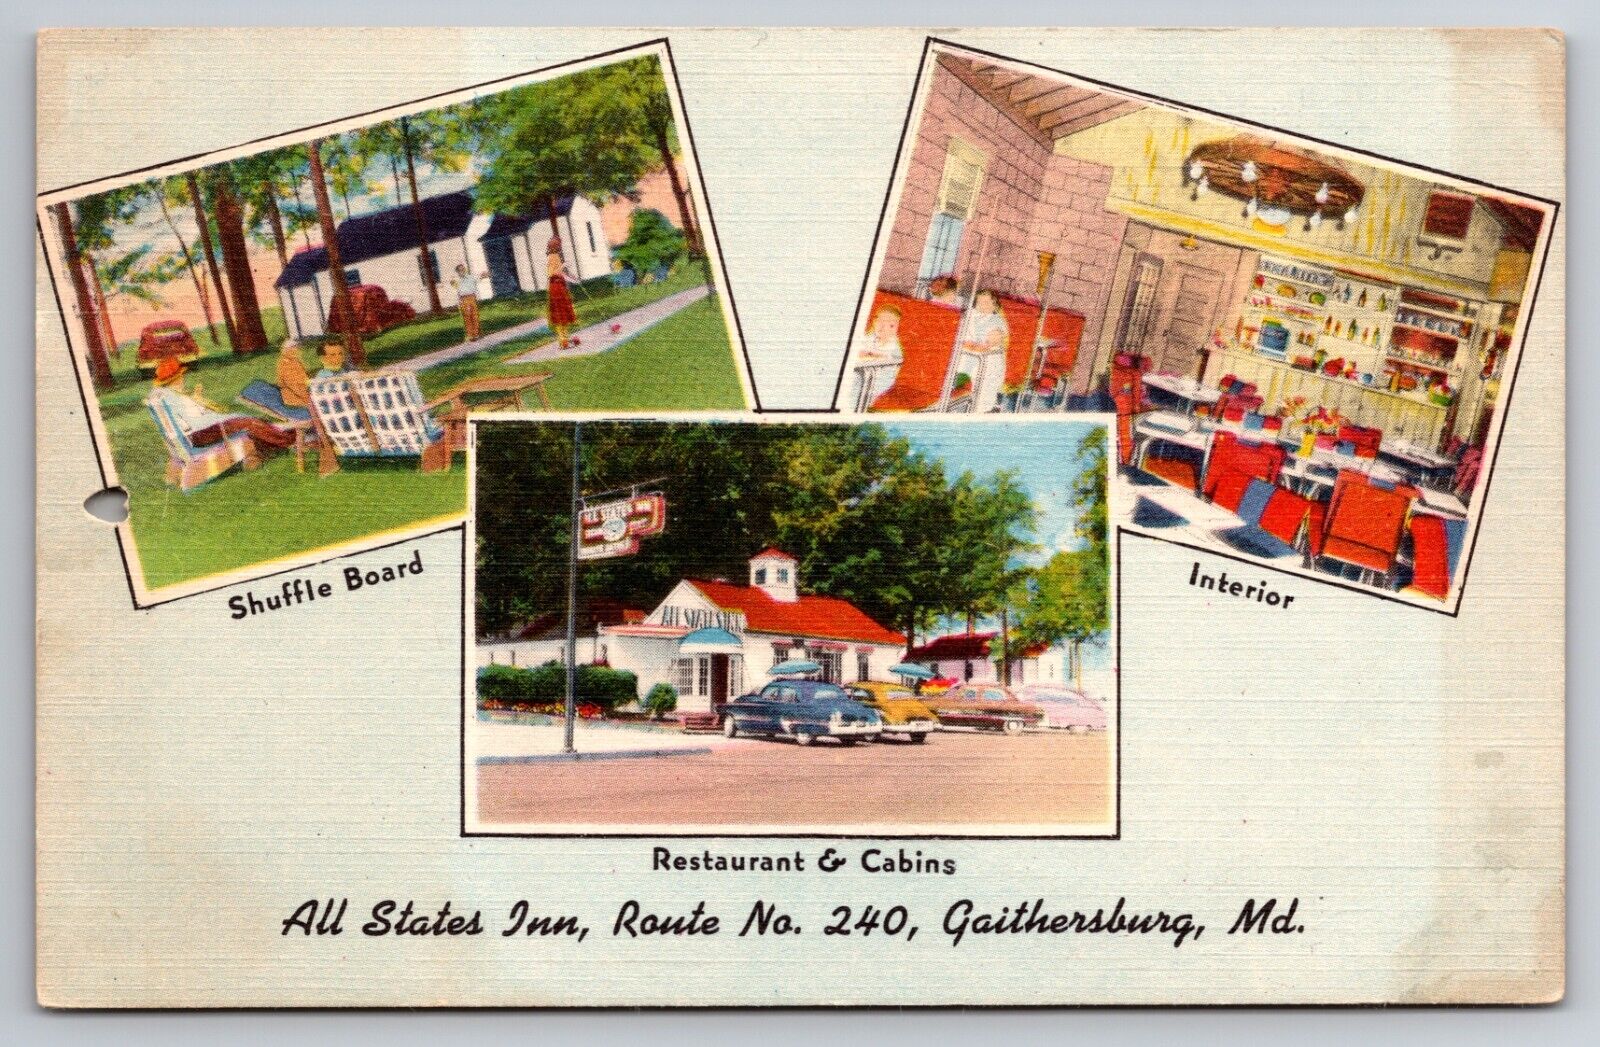 All States Inn Gaithersburg Maryland MD Restaurant & Cabins Linen 1954 Postcard